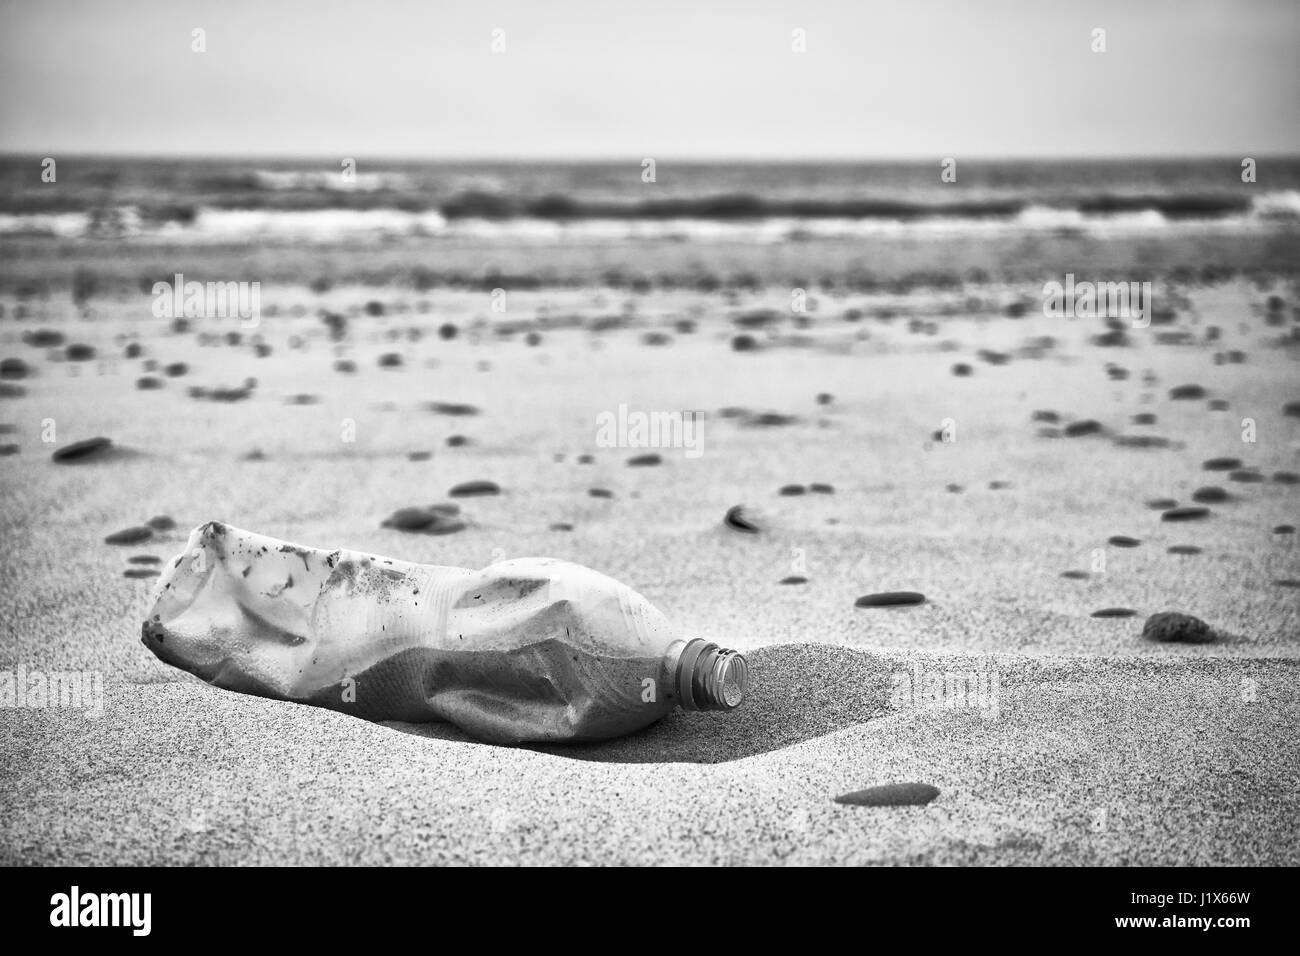 Schwarz / weiß Bild eine Leere Plastikflasche, die auf einen Strand, Tiefenschärfe, Umweltverschmutzung Konzept Bild hinterlassen. Stockfoto